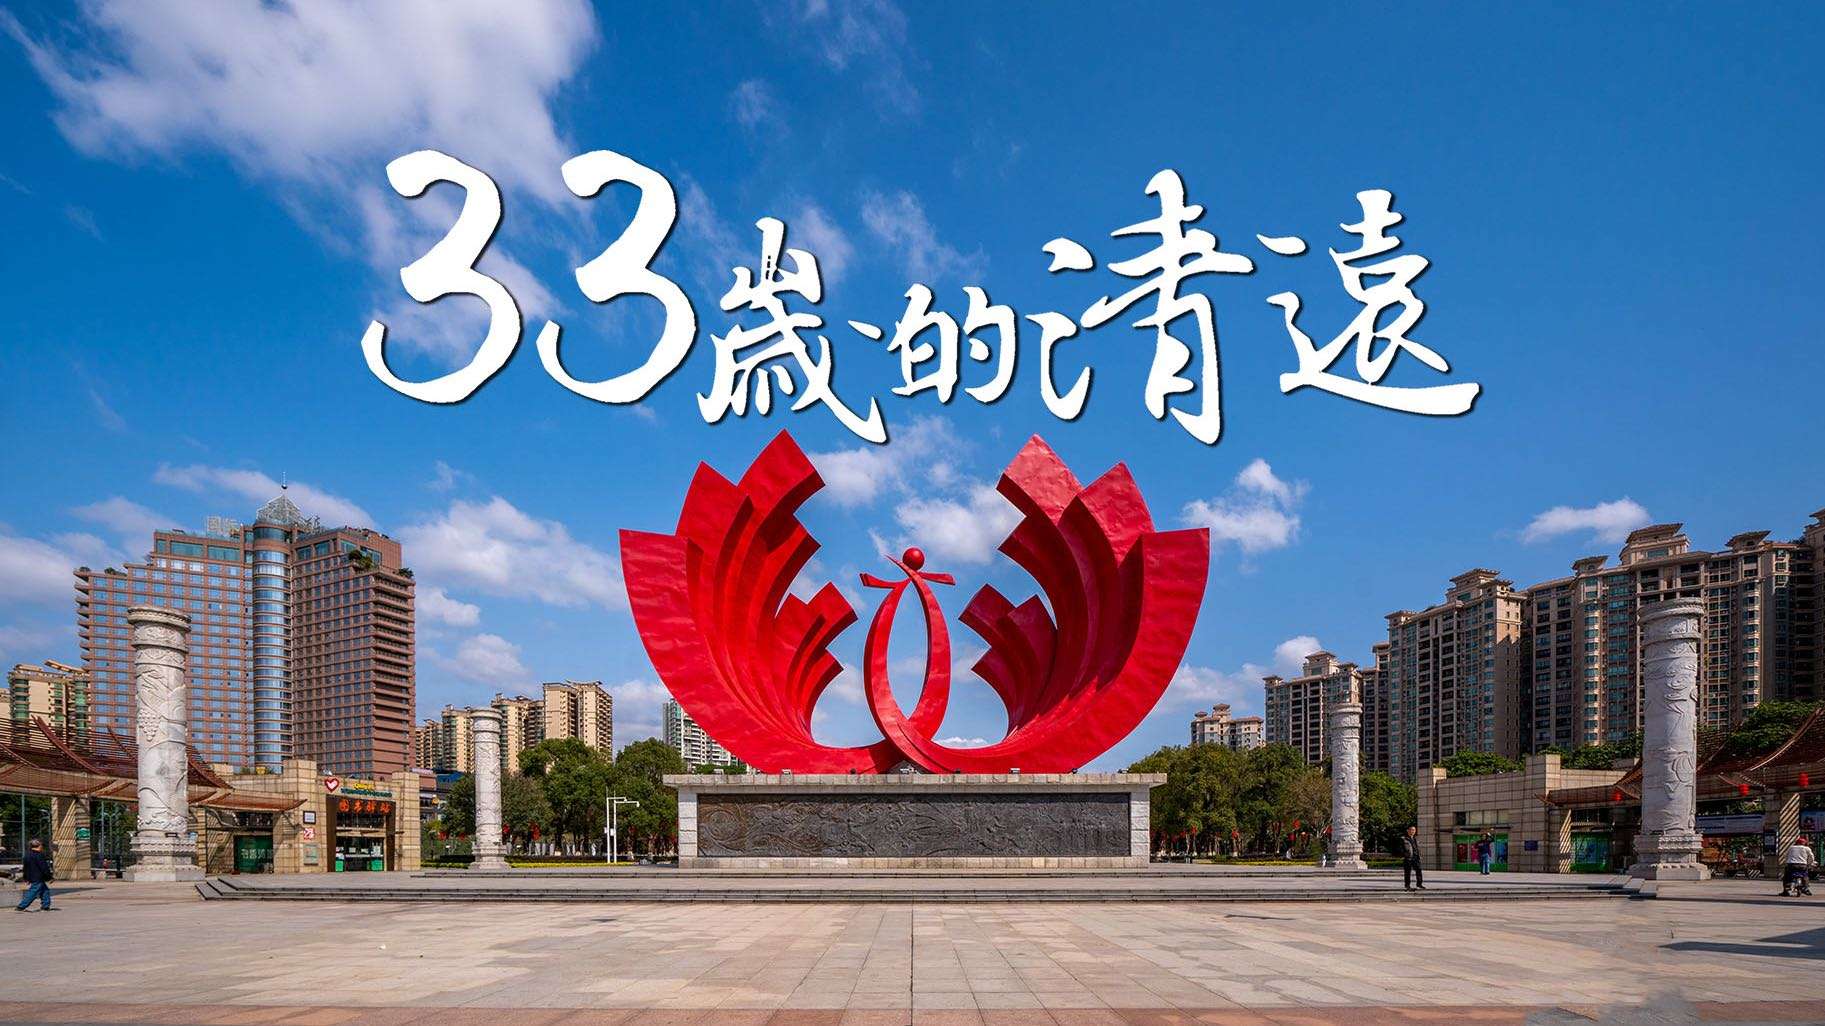 清远建市33周年宣传片《33岁的清远》